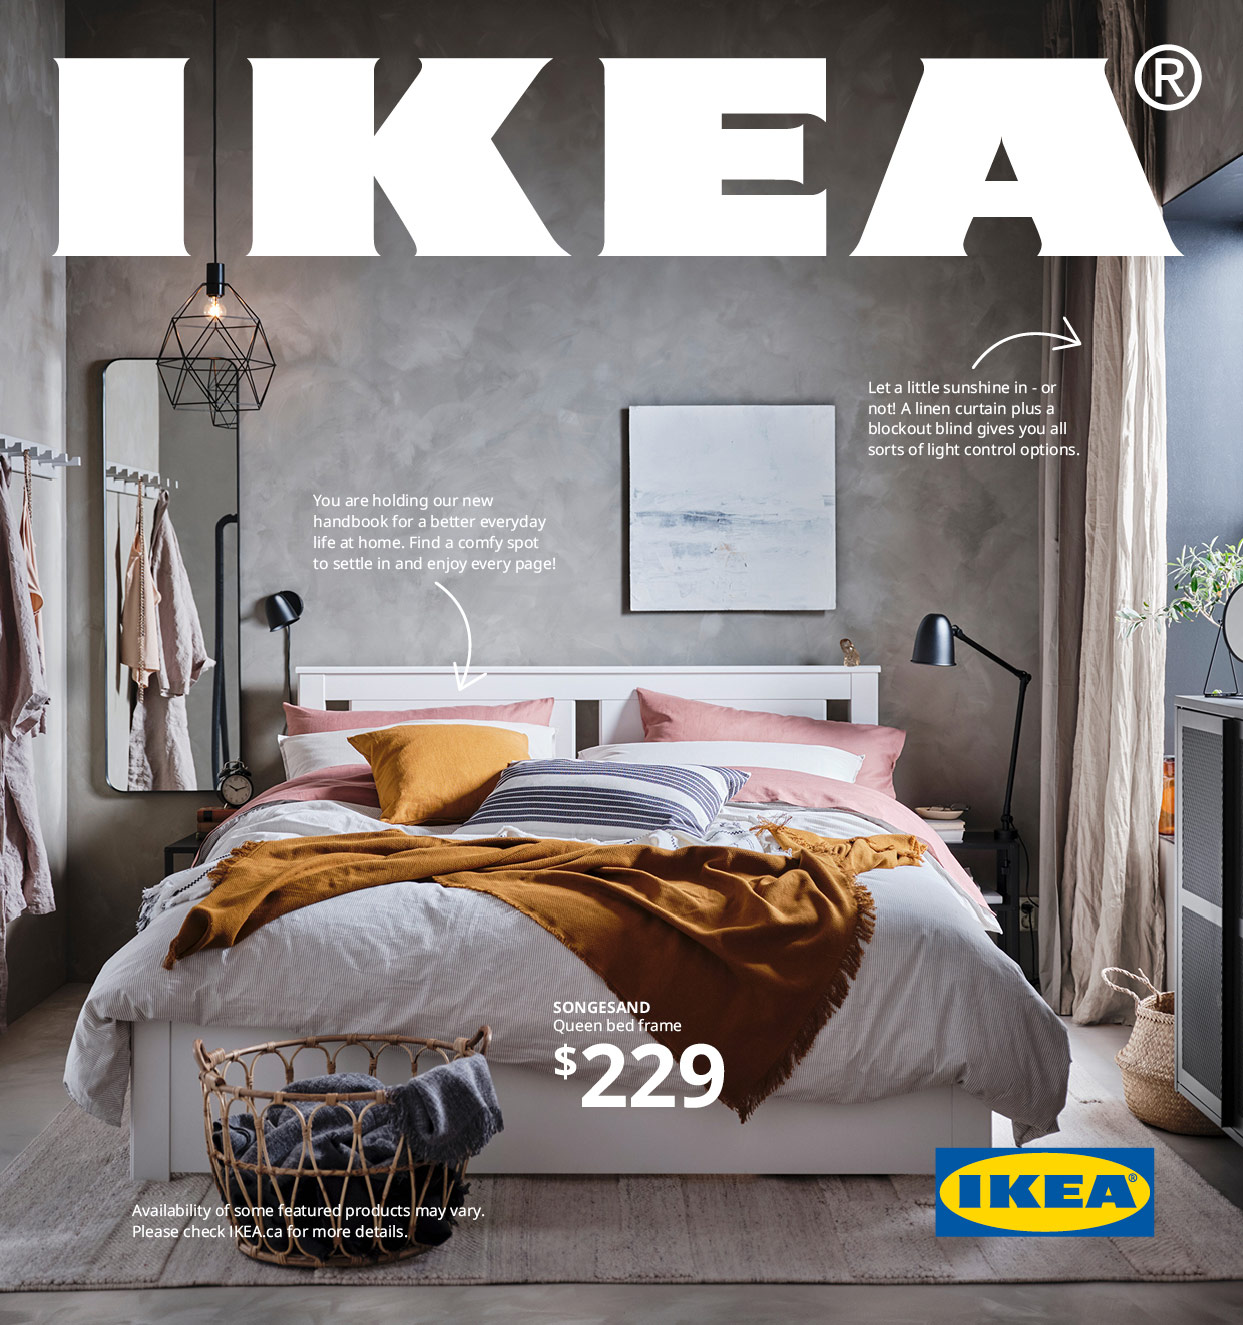 IKEA katalogomslag 2021 med bild av sovrum och IKEA logotyp.